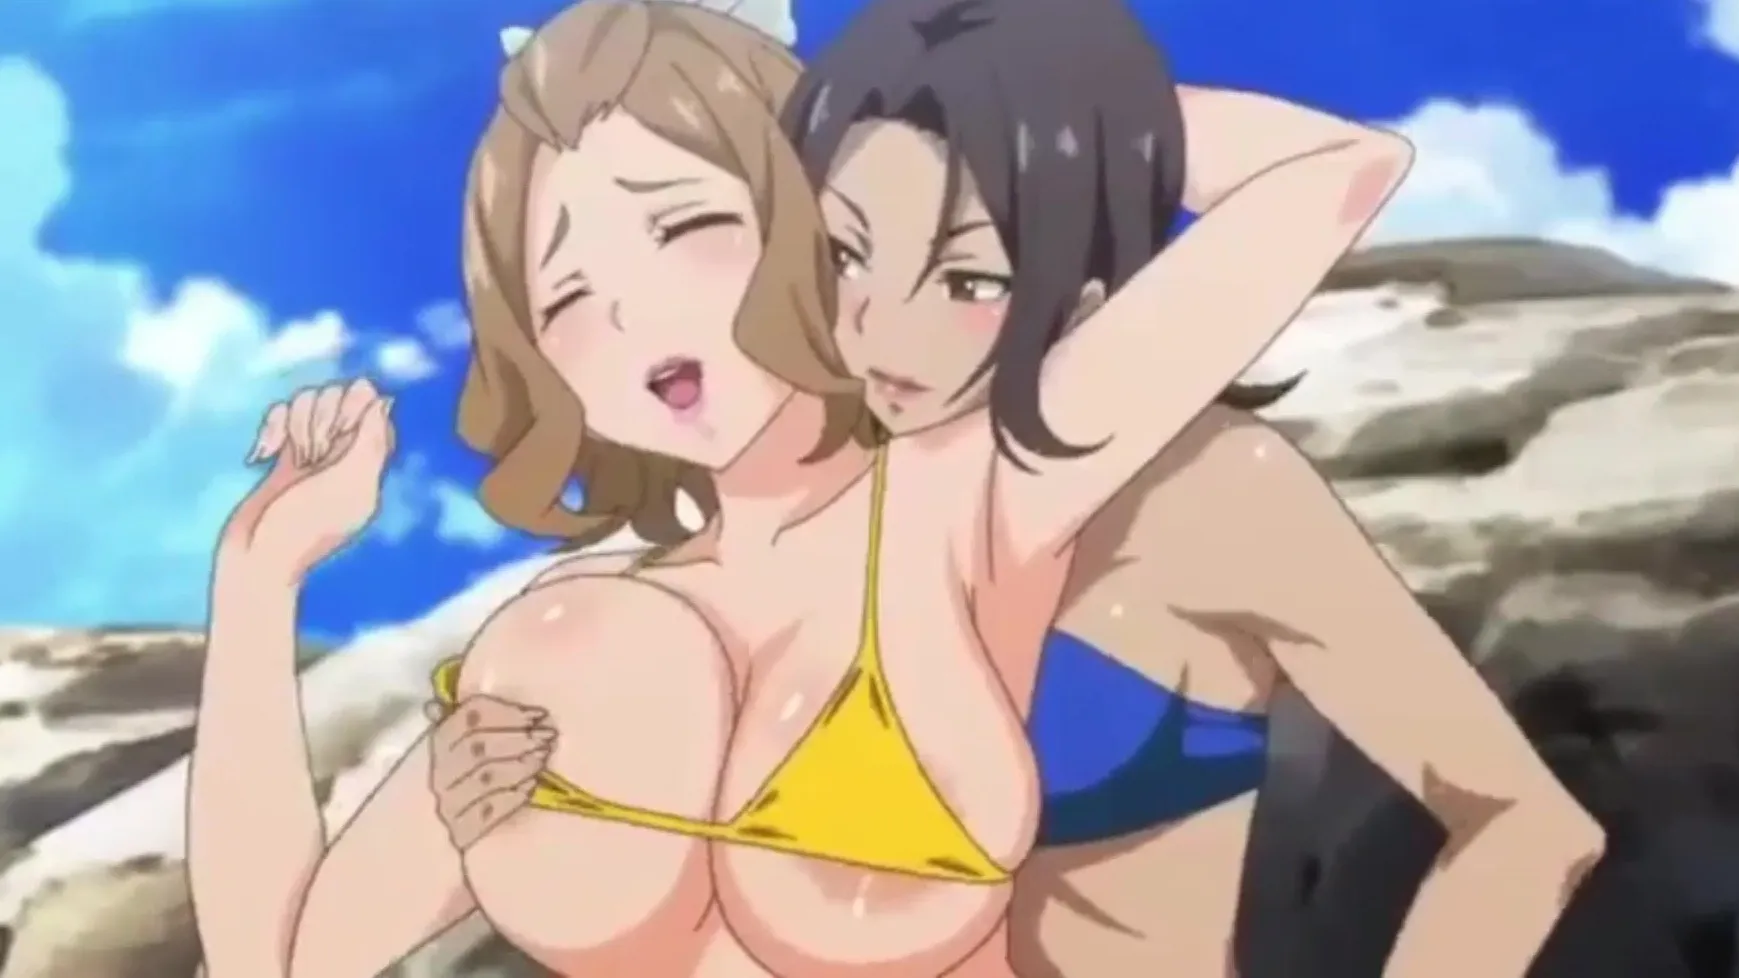 Anime leabian porn